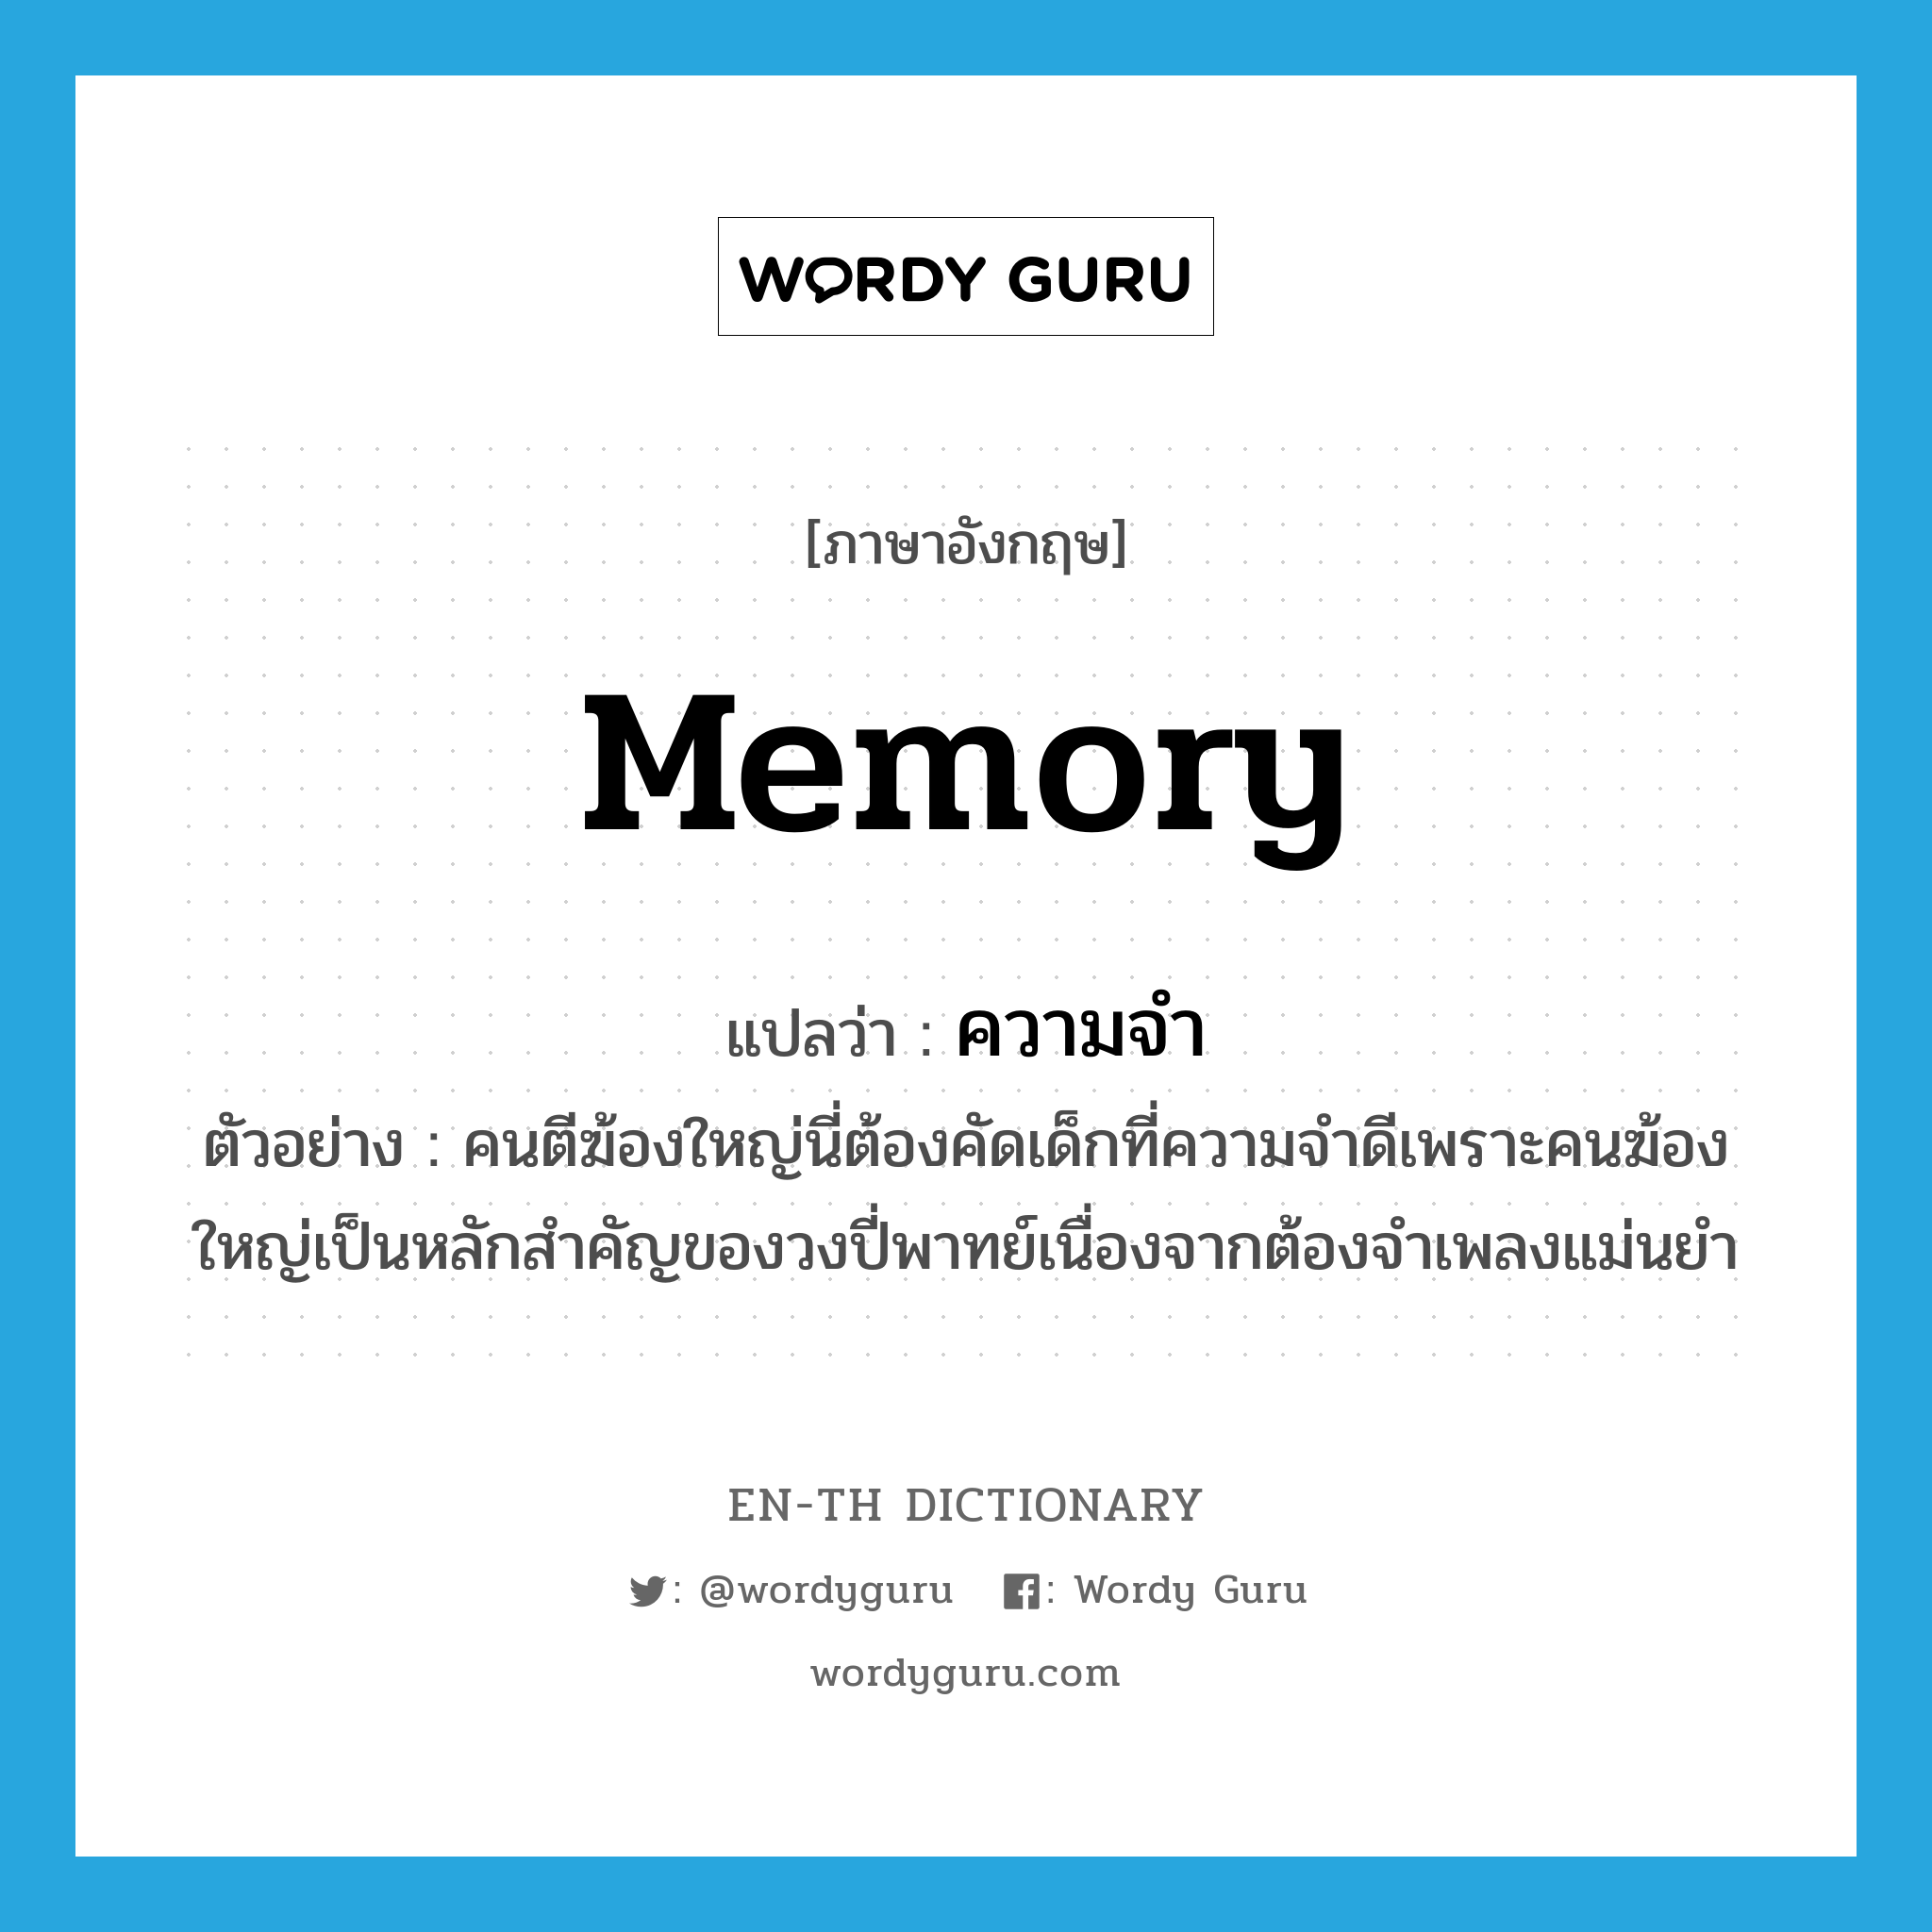 memory แปลว่า?, คำศัพท์ภาษาอังกฤษ memory แปลว่า ความจำ ประเภท N ตัวอย่าง คนตีฆ้องใหญ่นี่ต้องคัดเด็กที่ความจำดีเพราะคนฆ้องใหญ่เป็นหลักสำคัญของวงปี่พาทย์เนื่องจากต้องจำเพลงแม่นยำ หมวด N